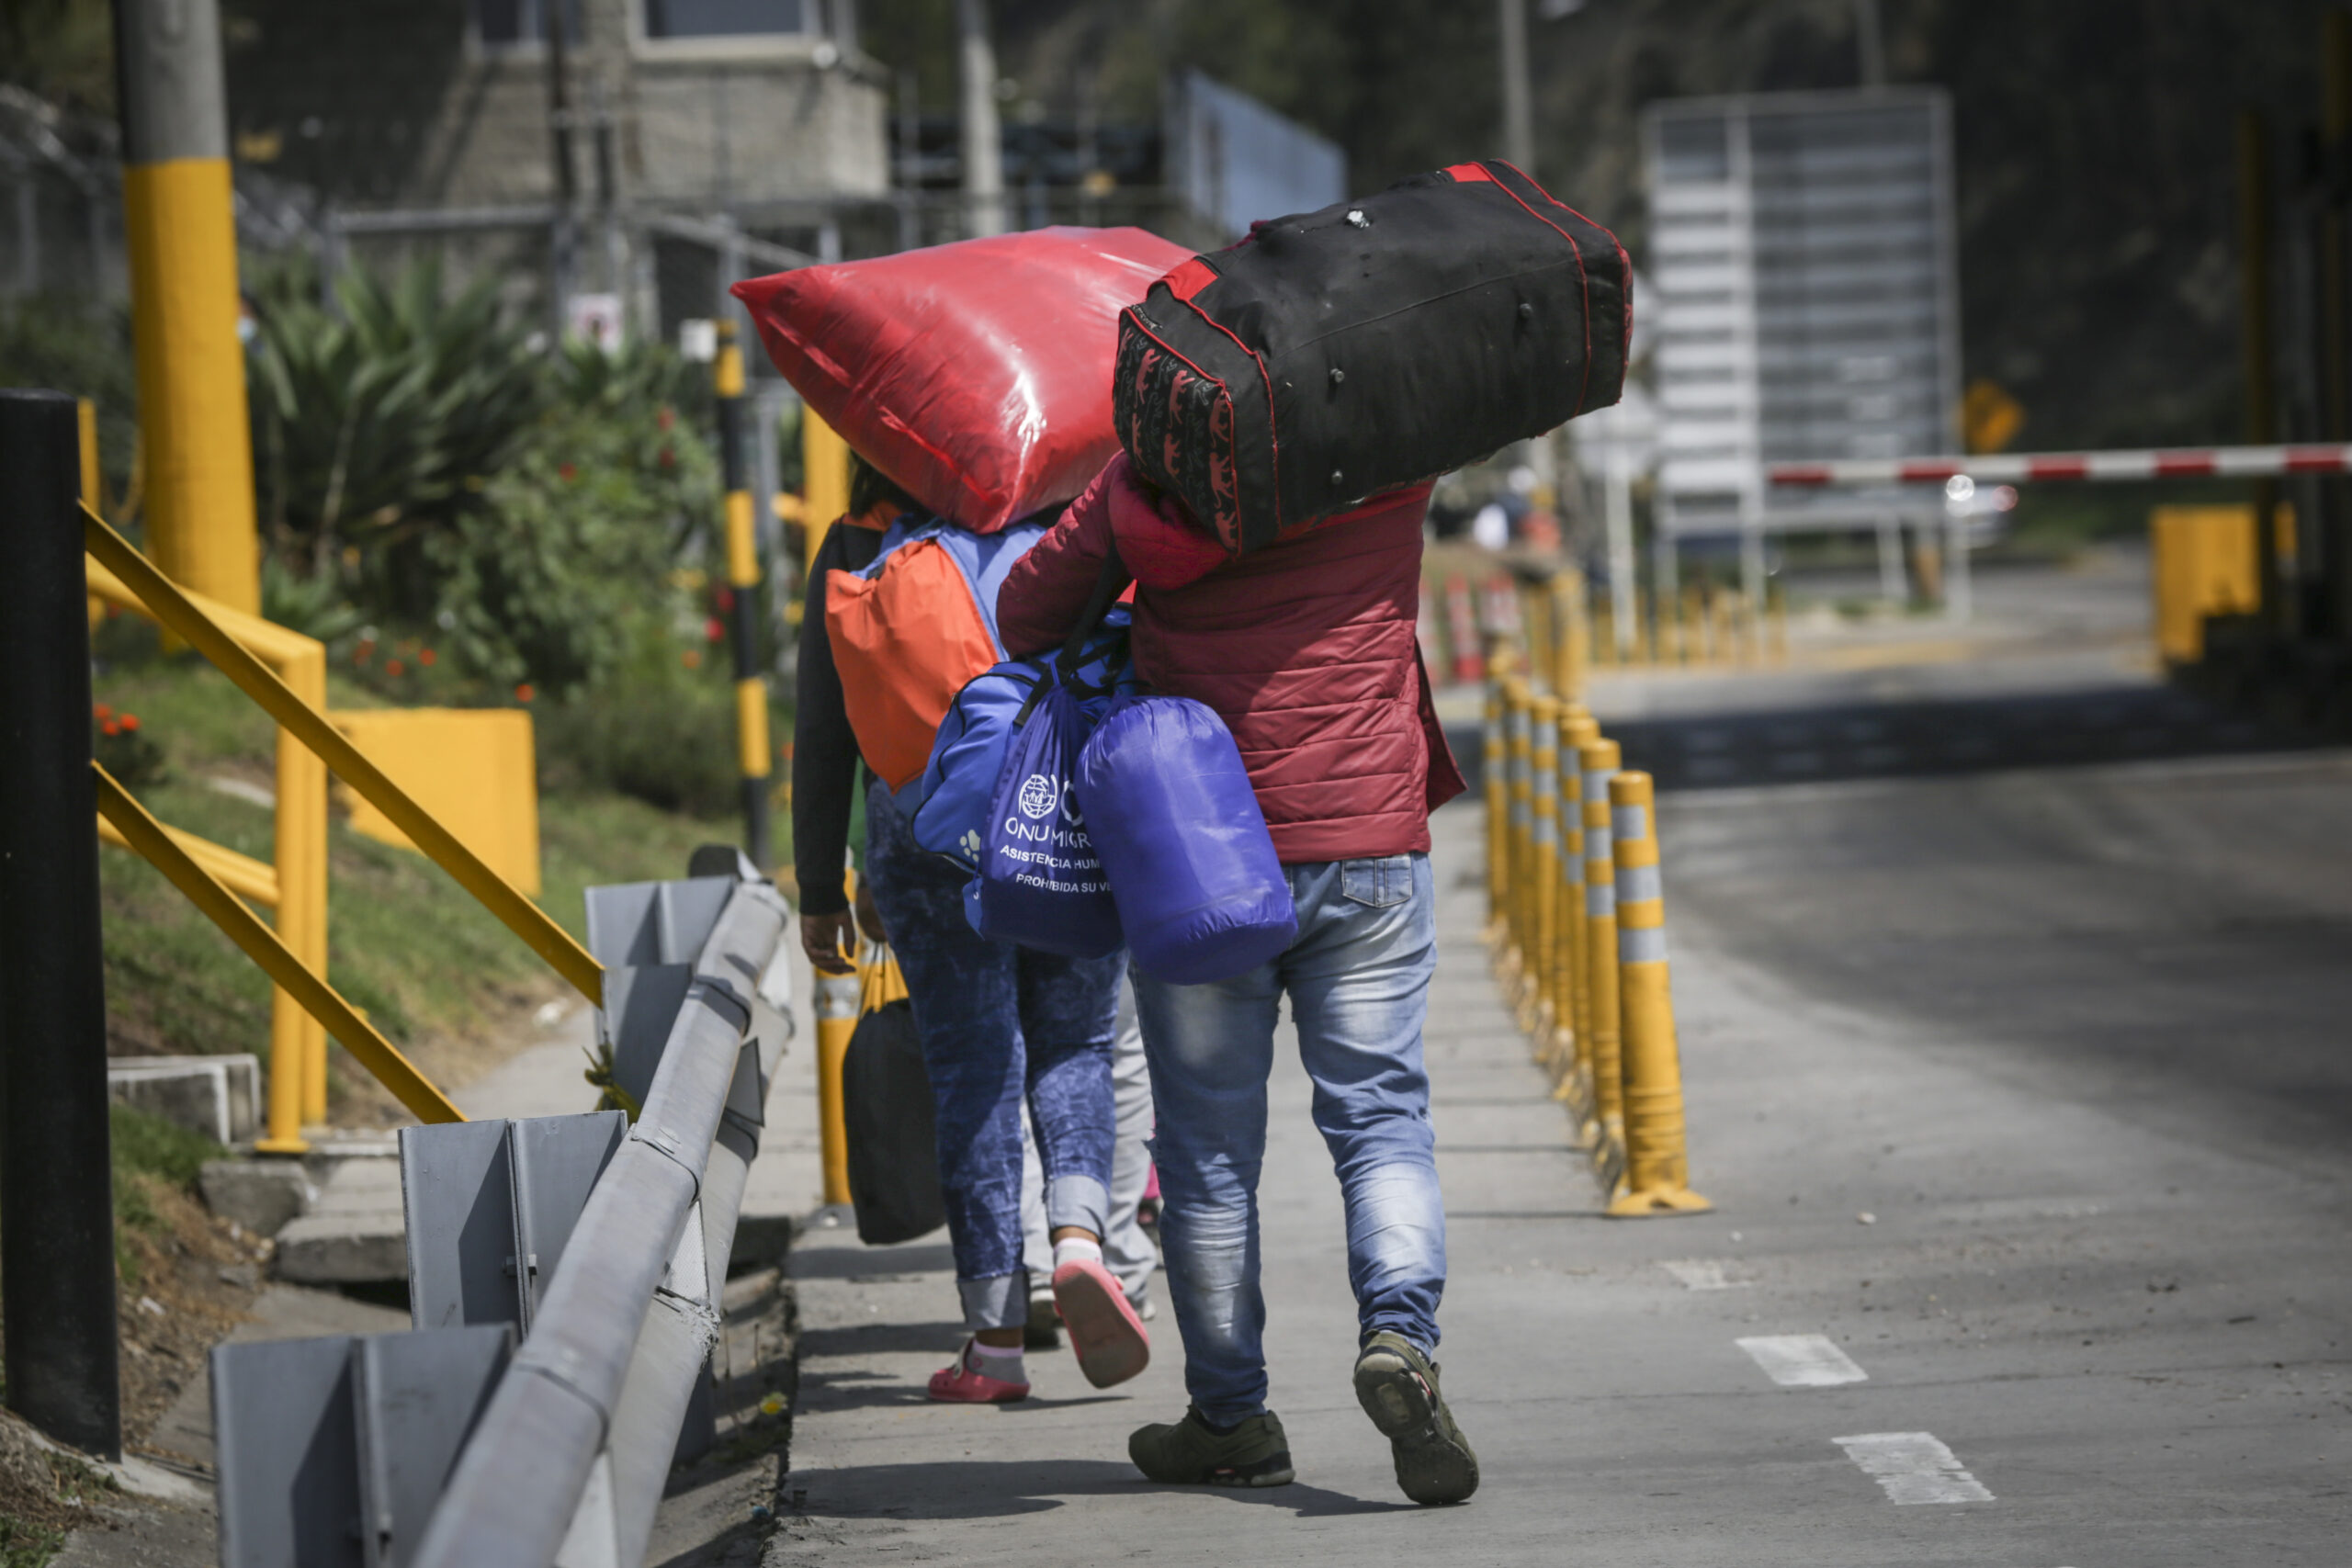 Dura realidad: casi 7 millones de venezolanos se fueron del país en últimos años, según reporte